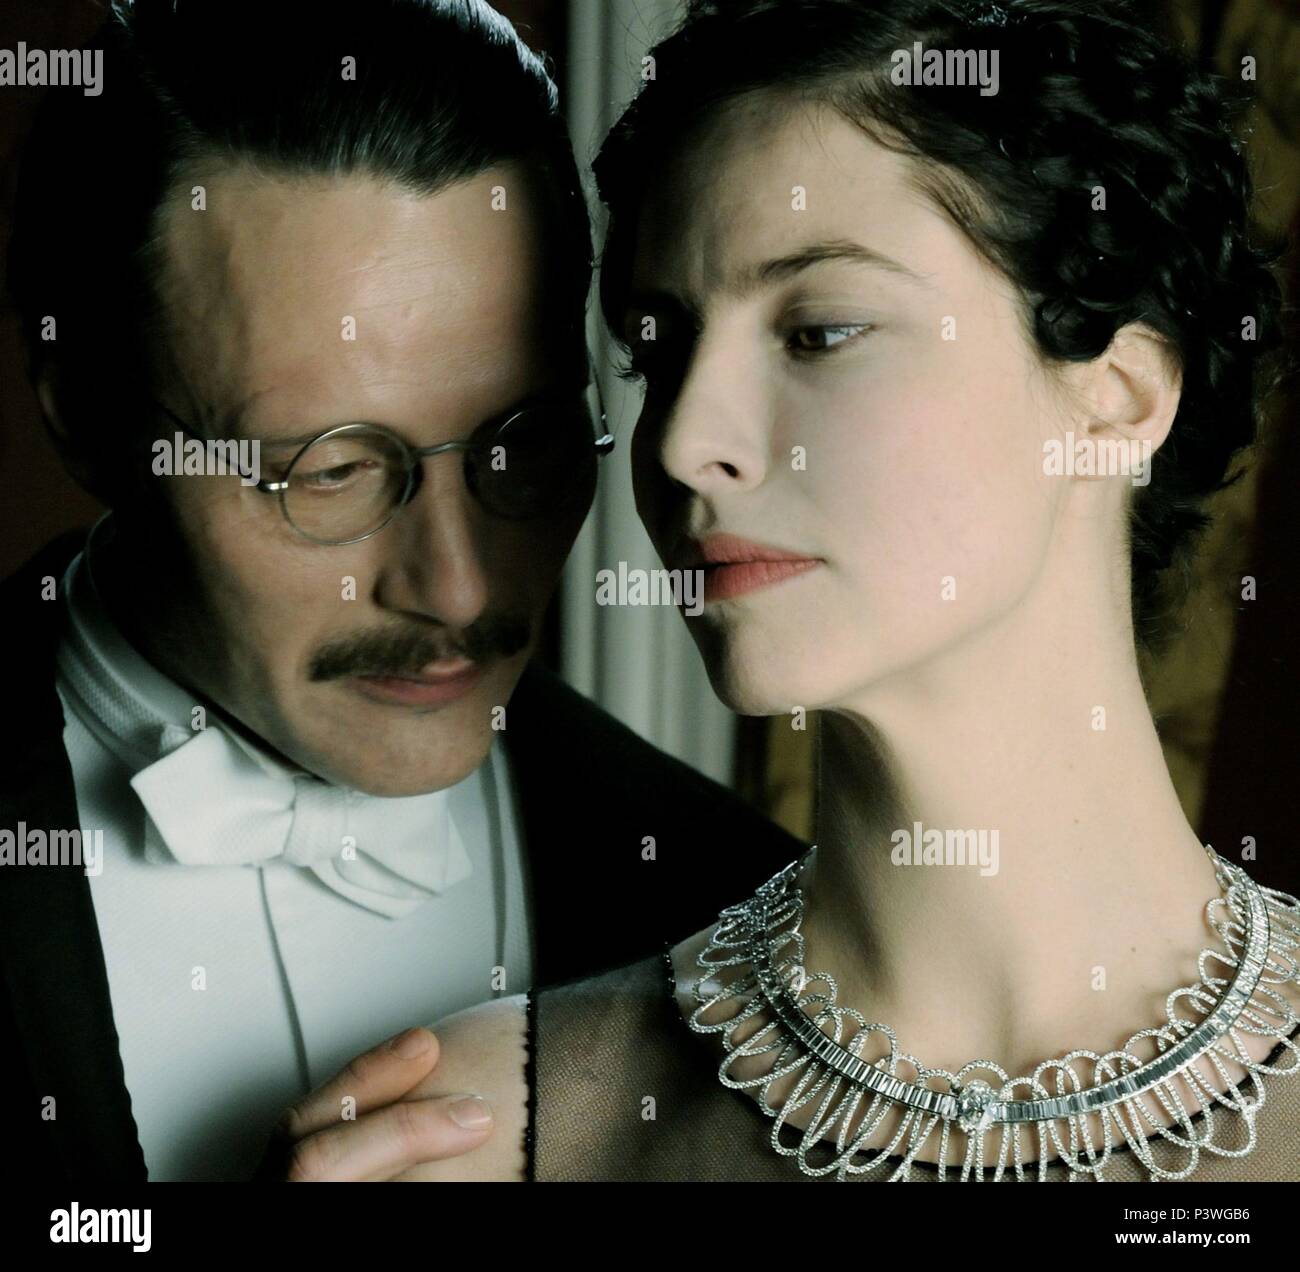 Coco Chanel & Igor Stravinsky (2009) movie posters